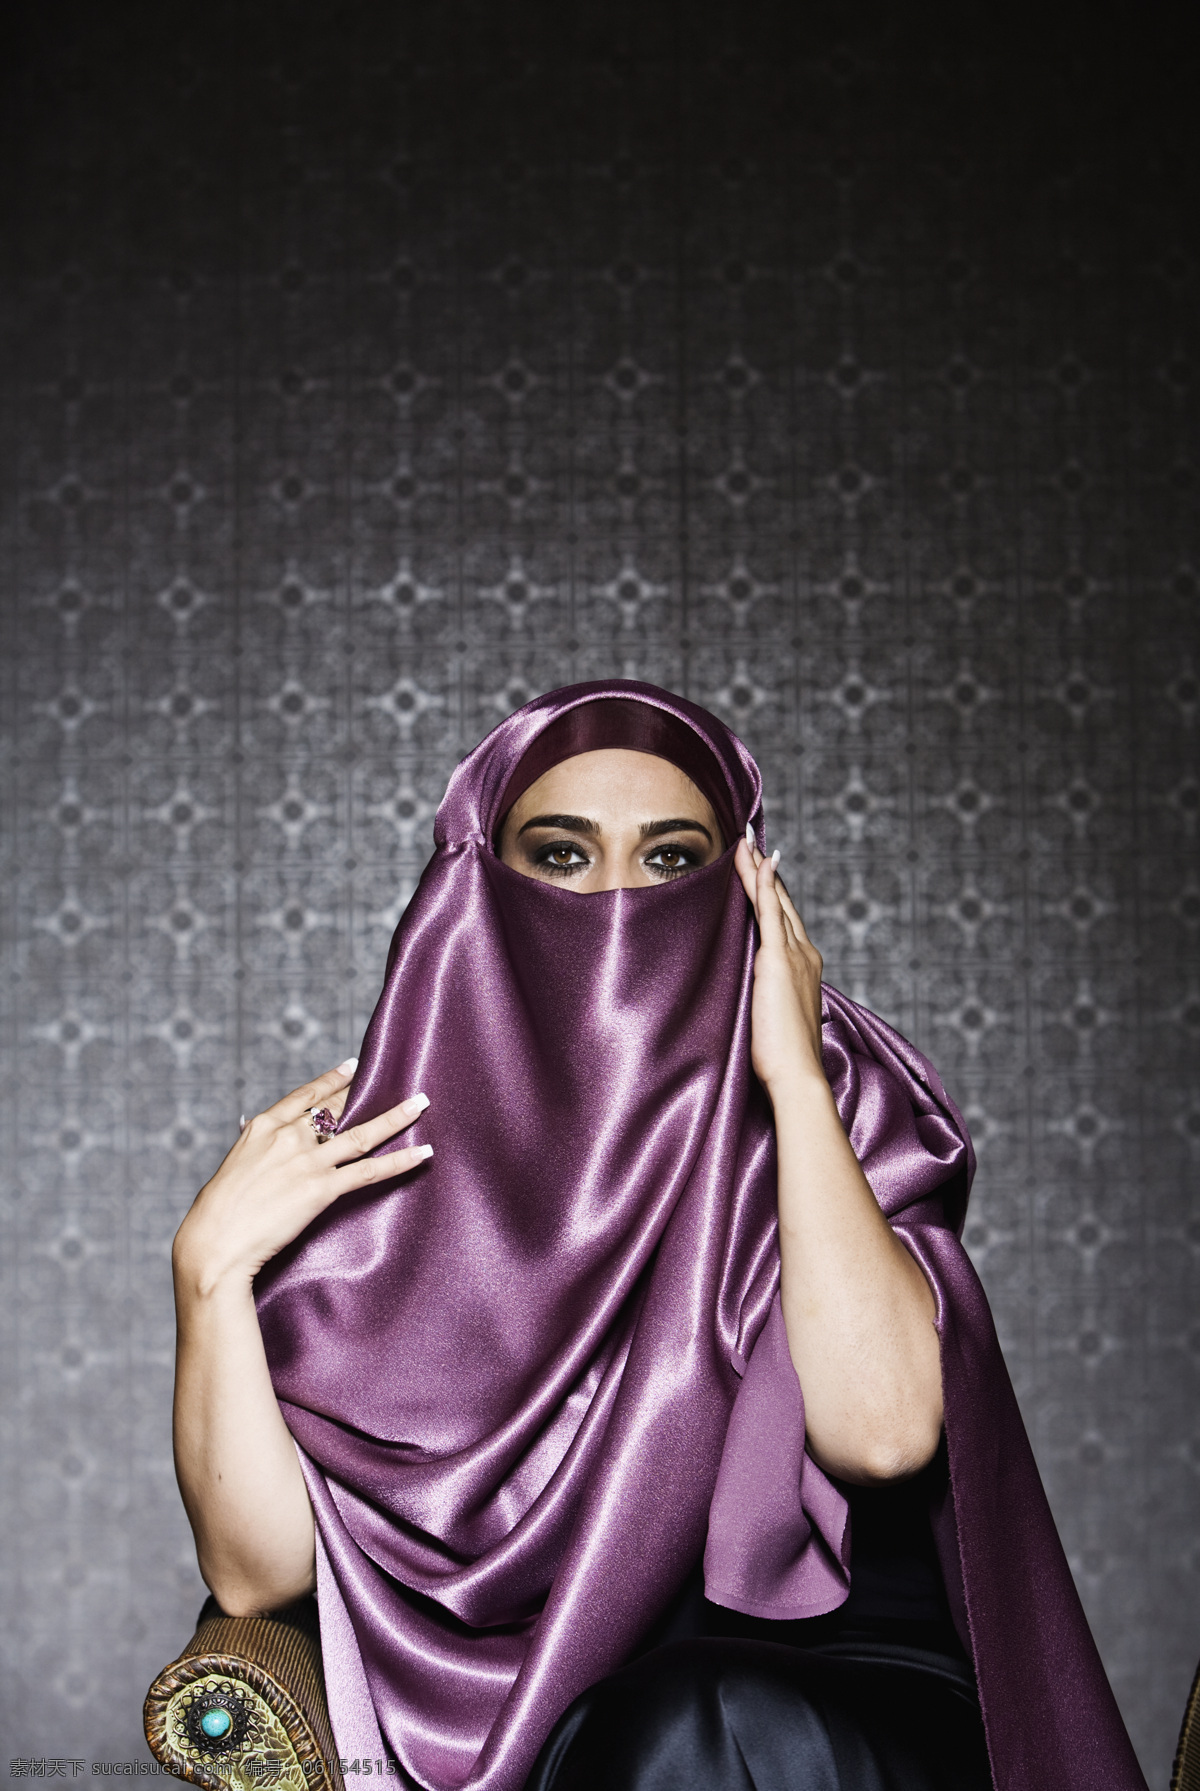 围着 丝绸 漂亮 女性 阿拉伯女性 伊朗女性 外国女性 蒙面 头巾 装扮 女人 美女图片 人物图片